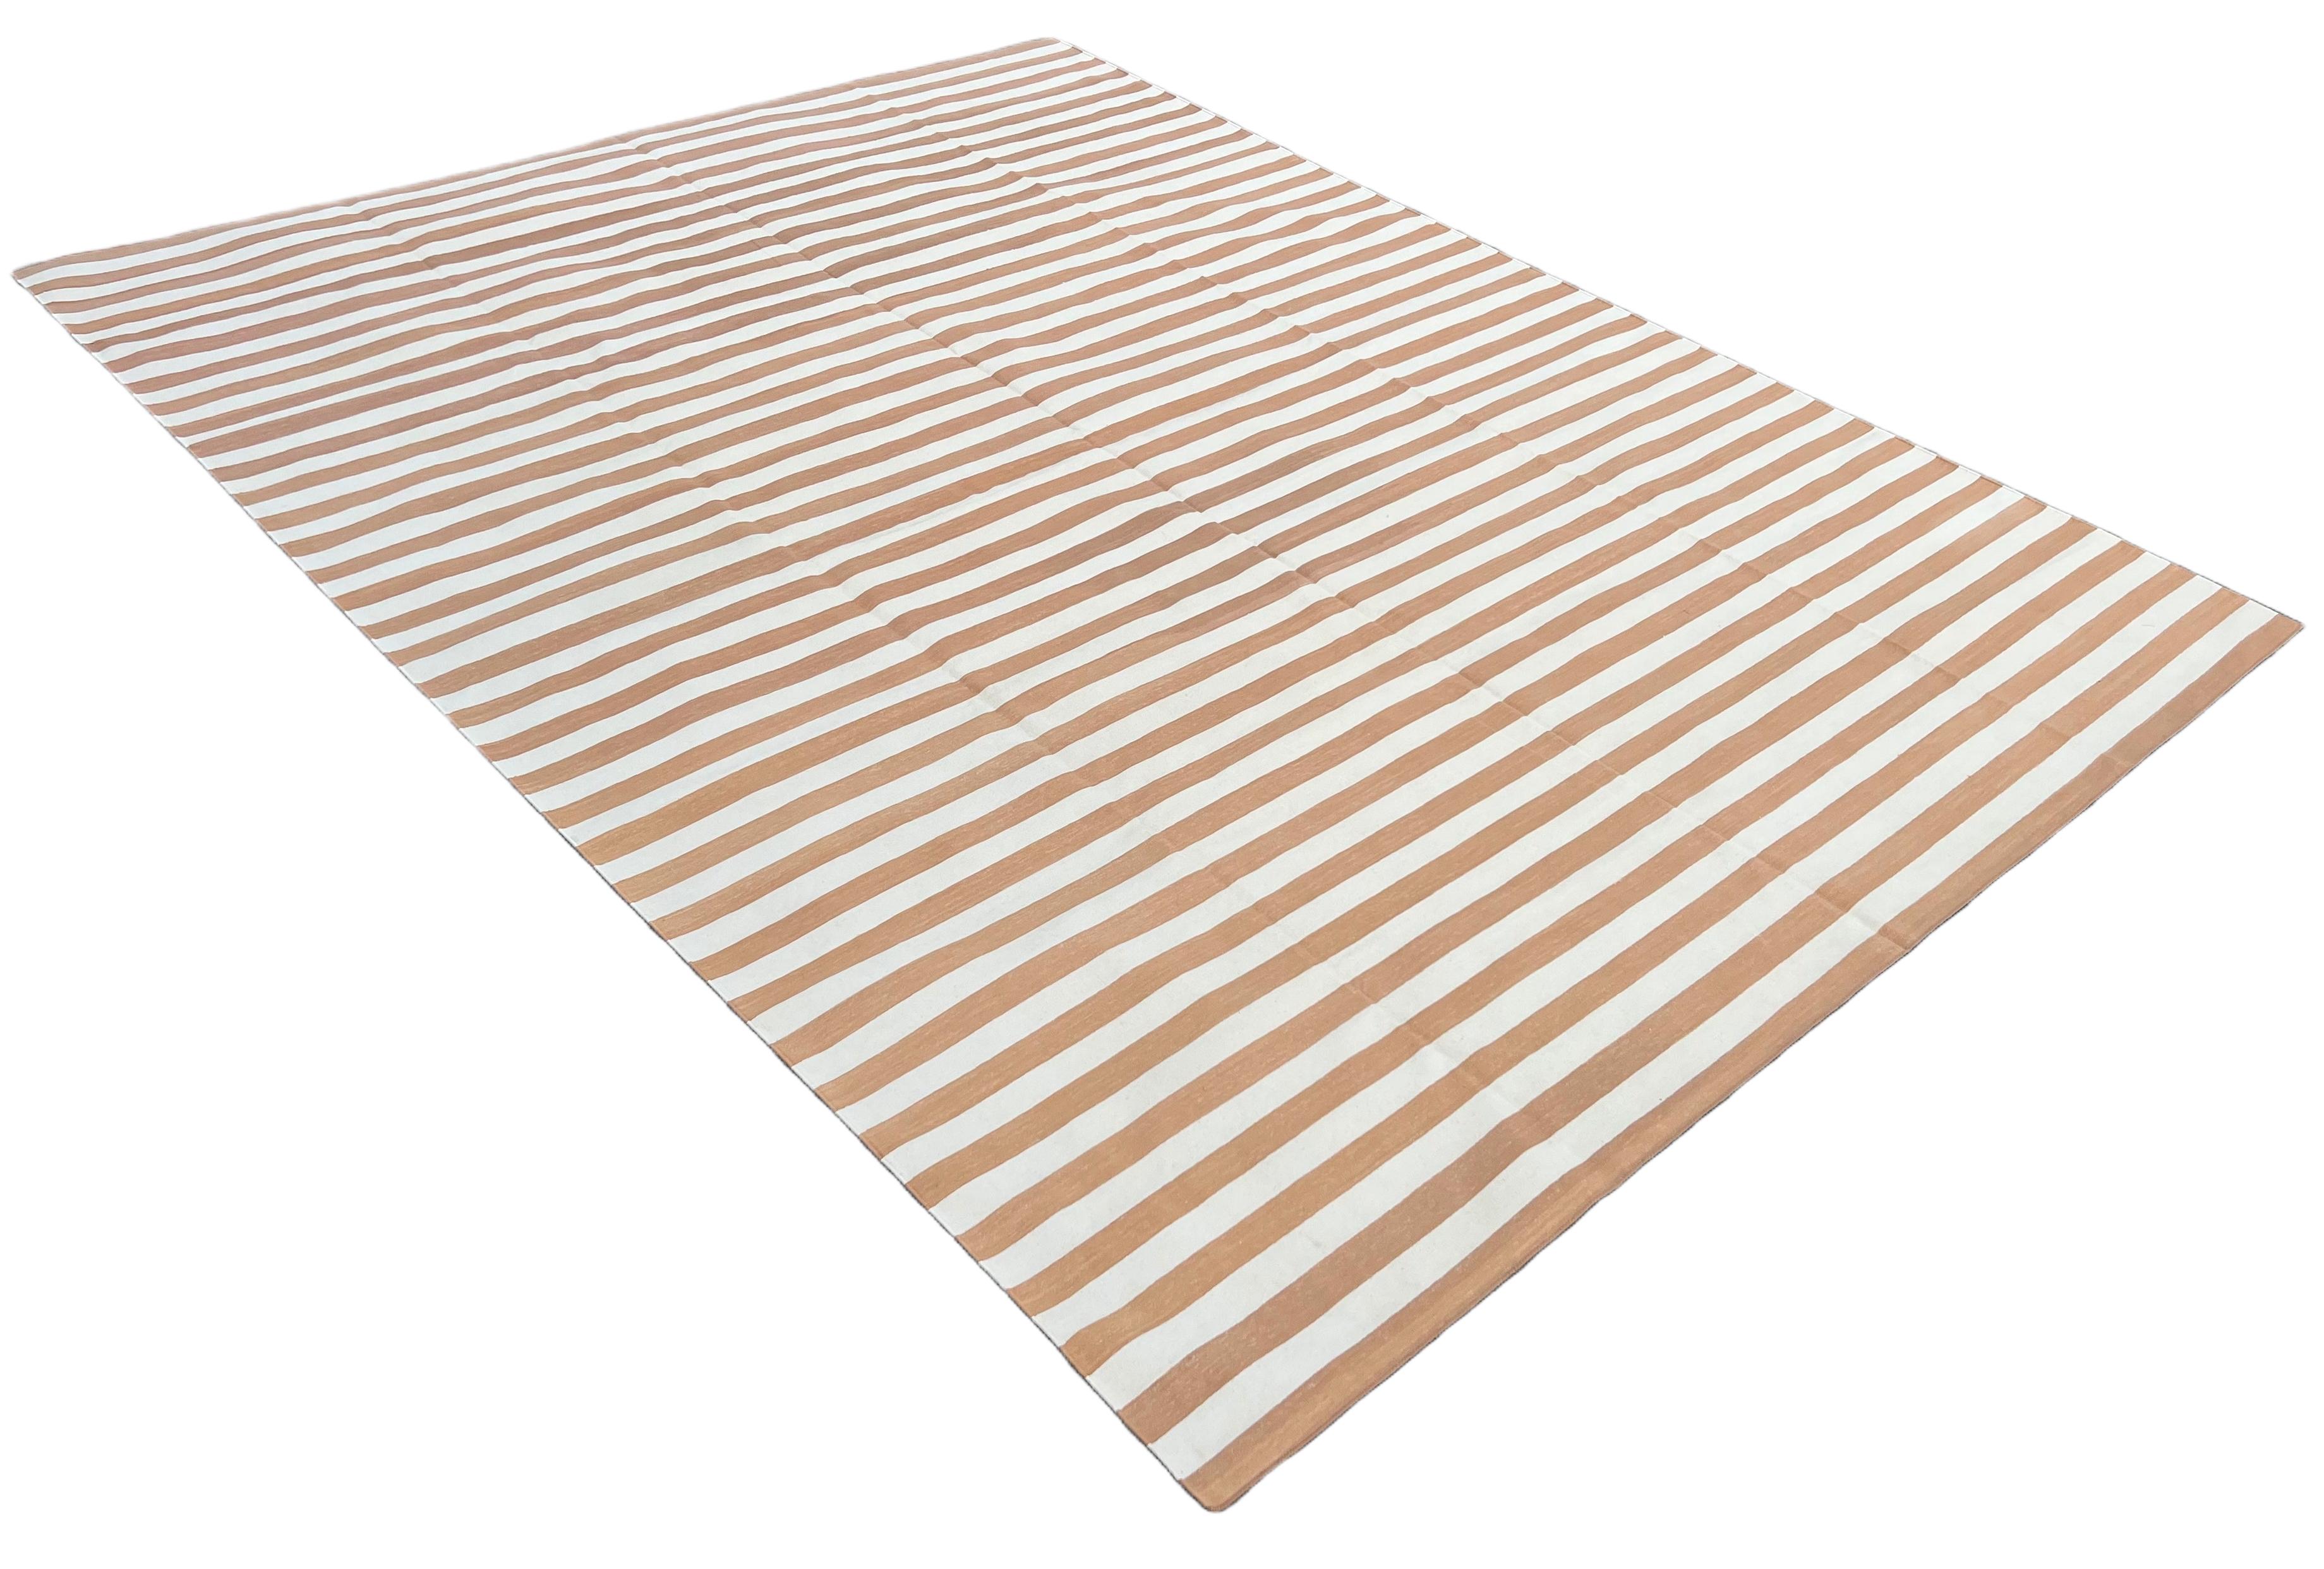 Vegetabil gefärbte Baumwolle Reversible Tan und weiß gestreiften indischen Dhurrie Teppich - 9'x12'
Diese speziellen flachgewebten Dhurries werden aus 15-fachem Garn aus 100% Baumwolle handgewebt. Aufgrund der speziellen Fertigungstechniken, die zur